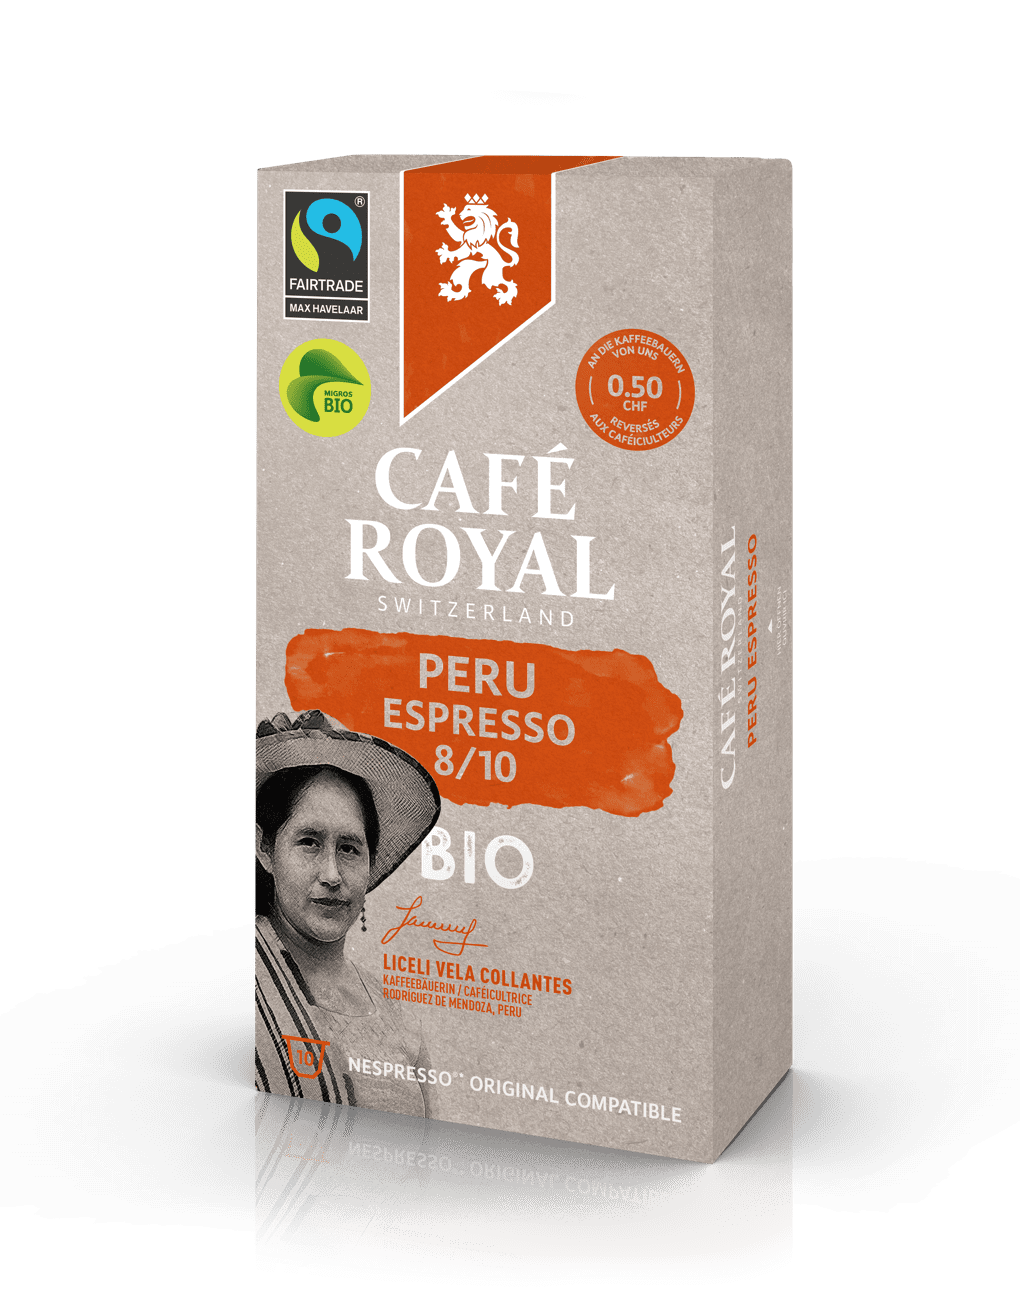 Café Royal Peru Espresso